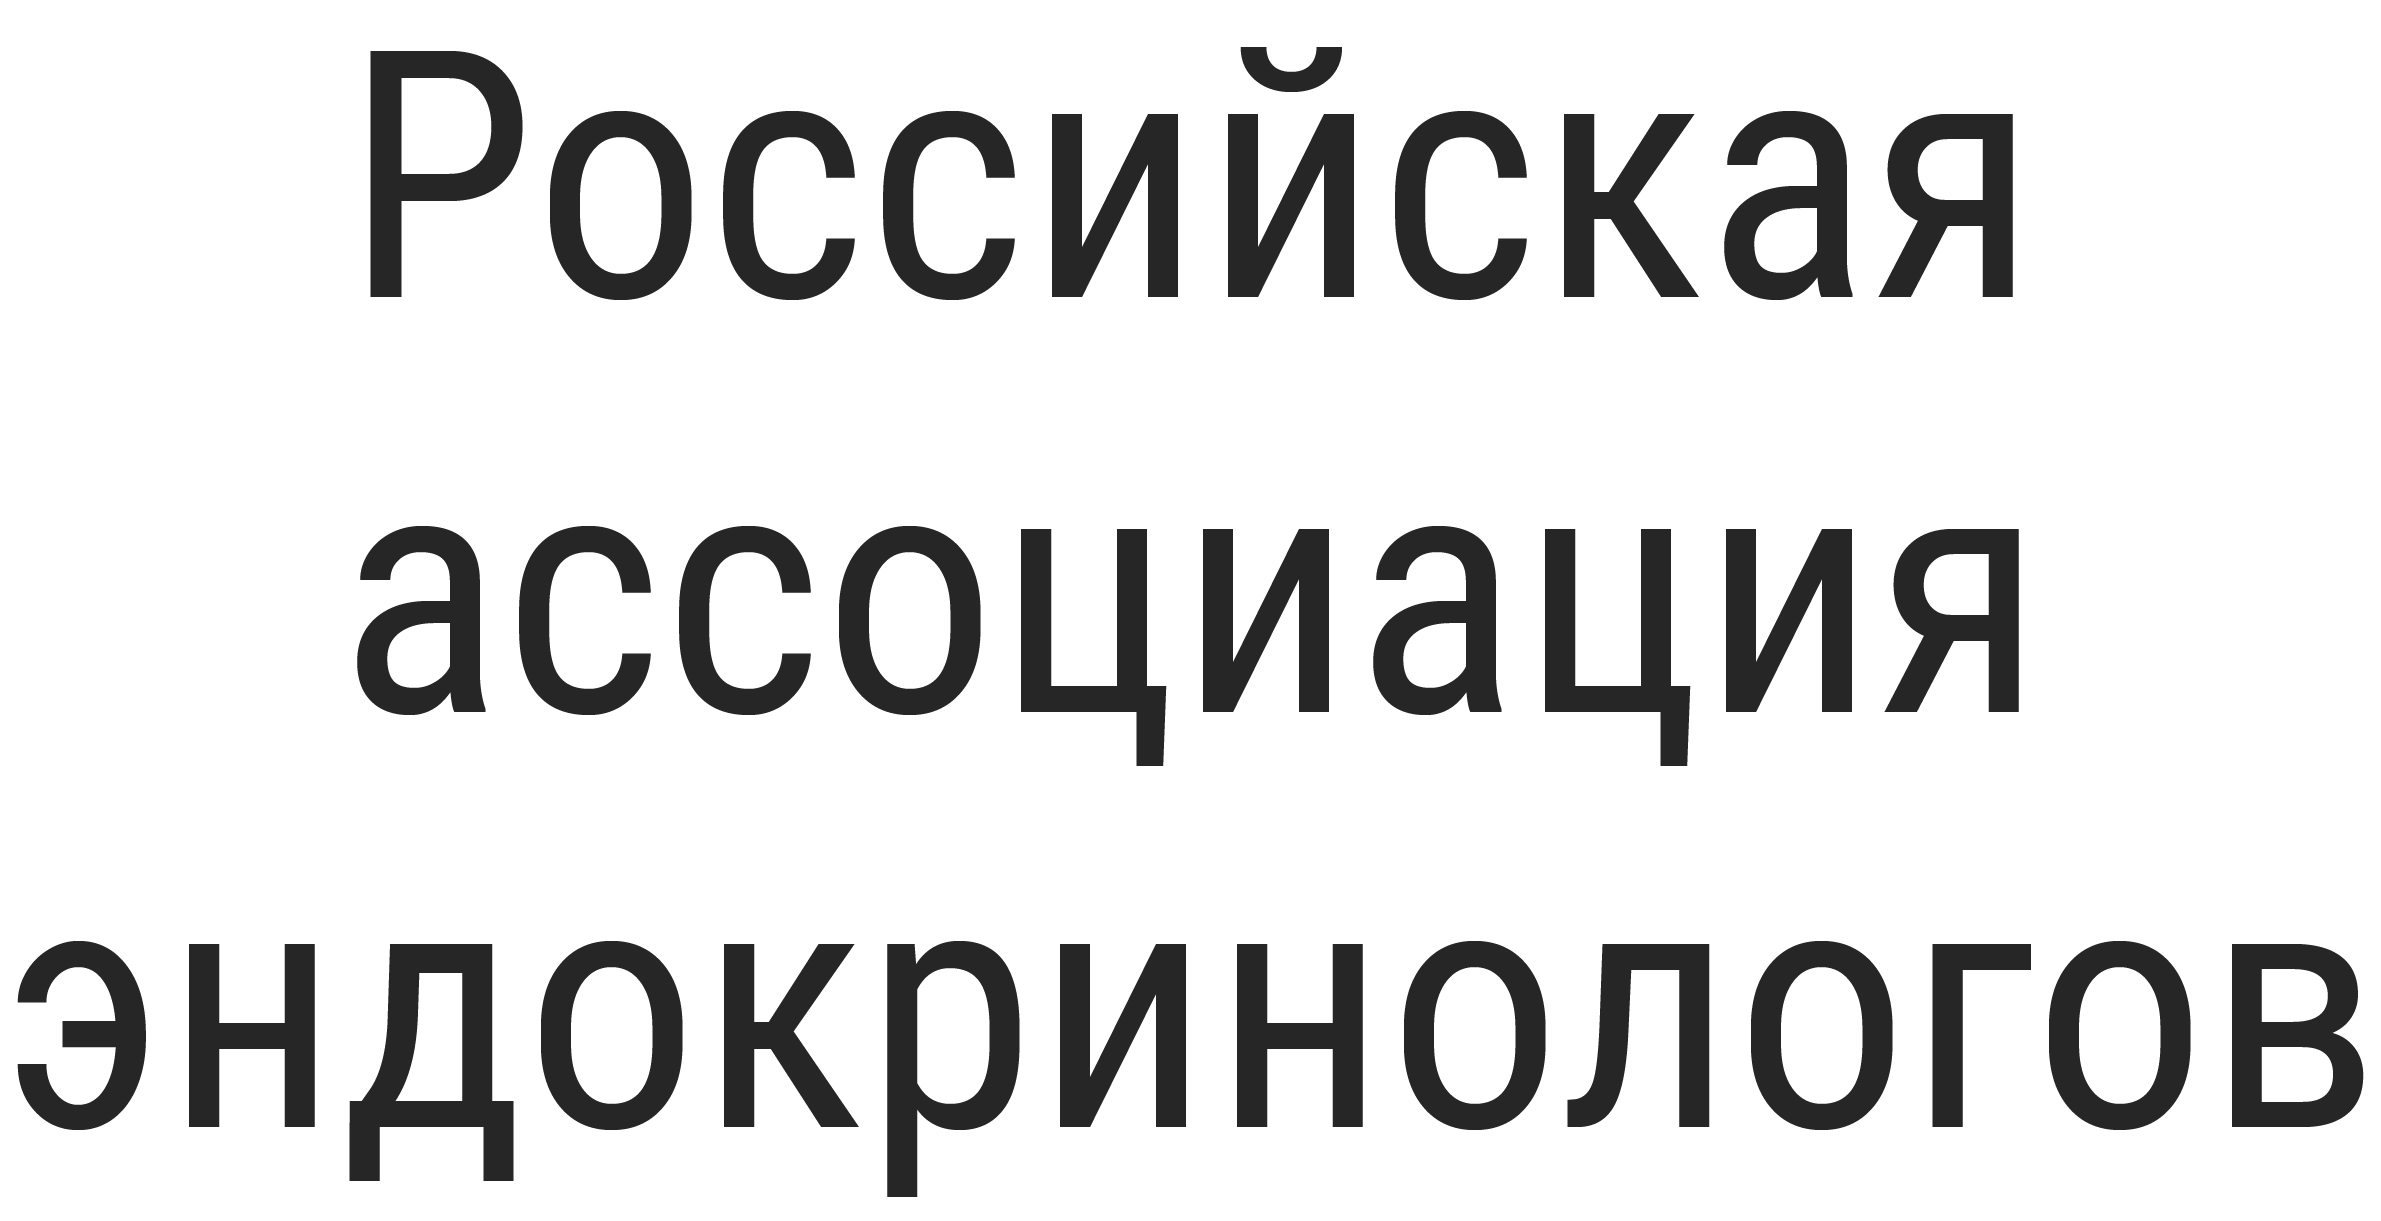 Российская ассоциация эндокринологов